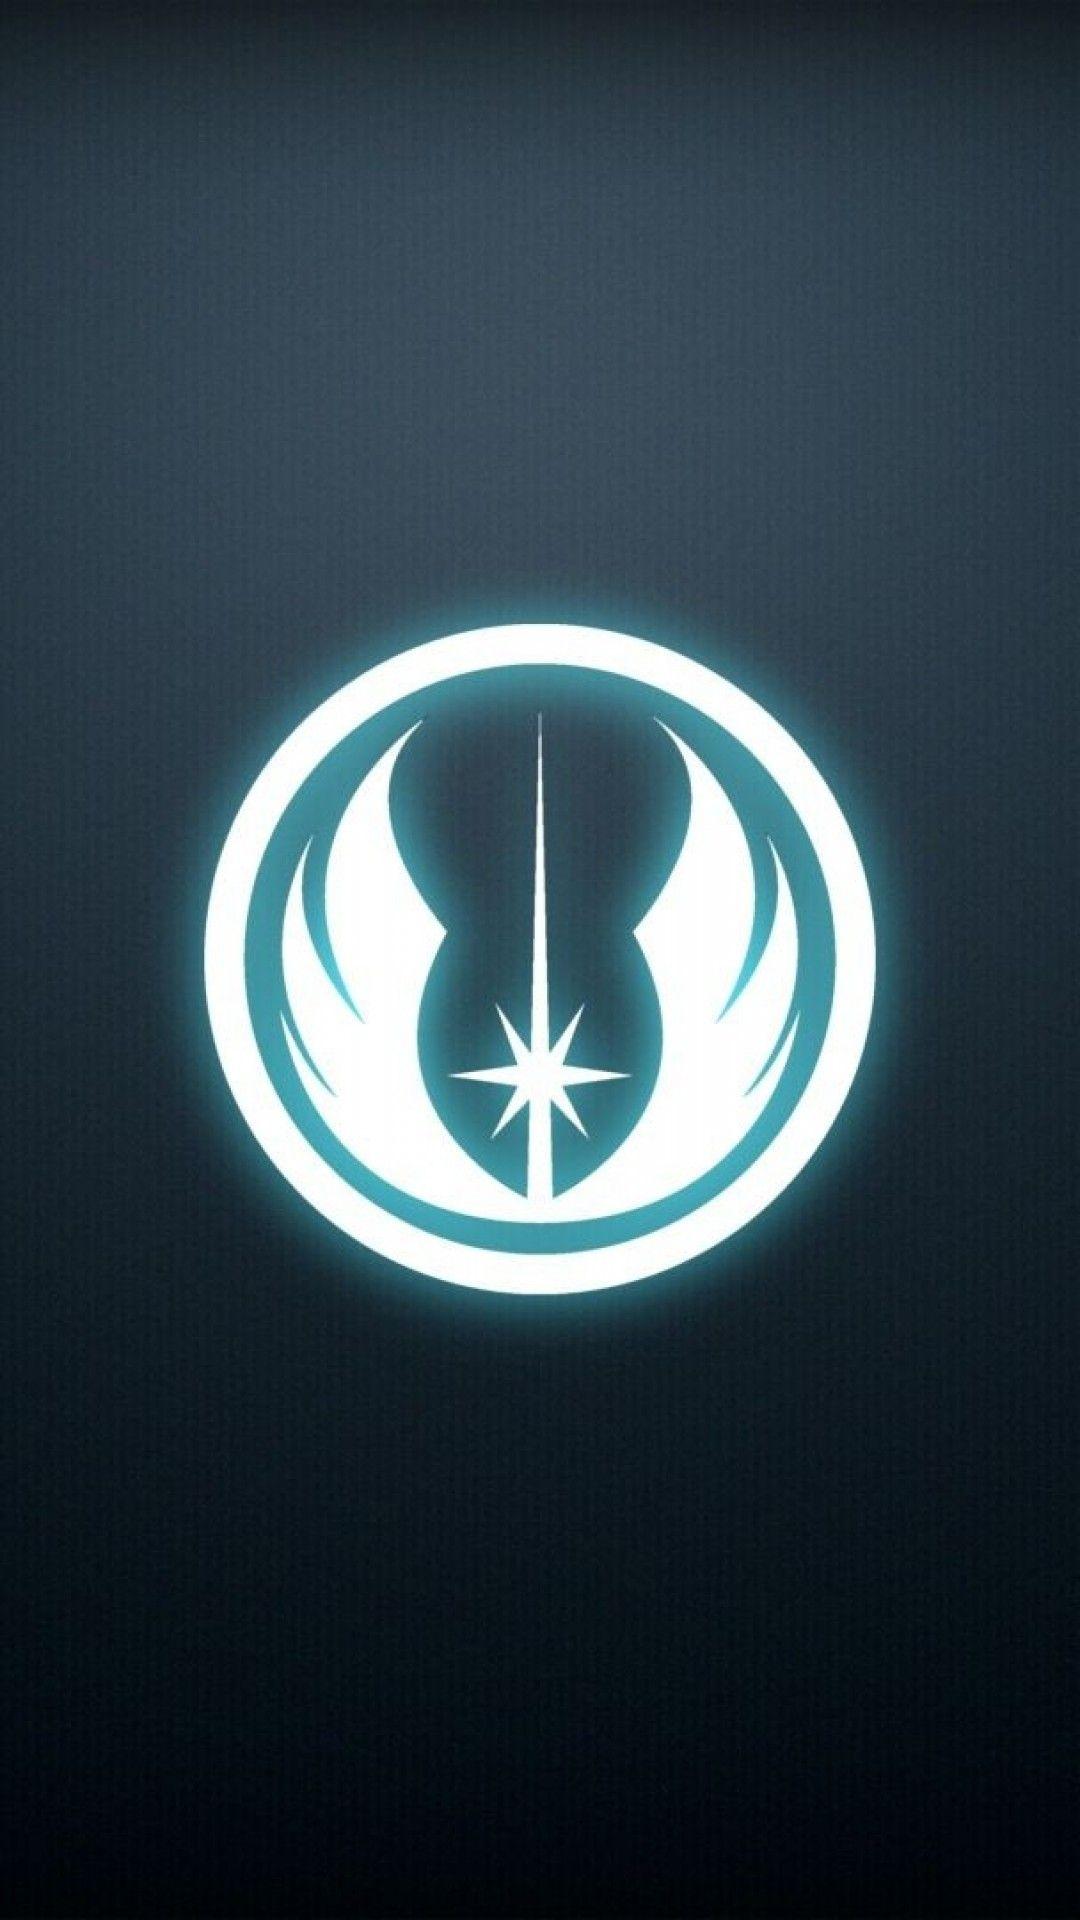 Star Wars Wallpaper star wars jedi logo